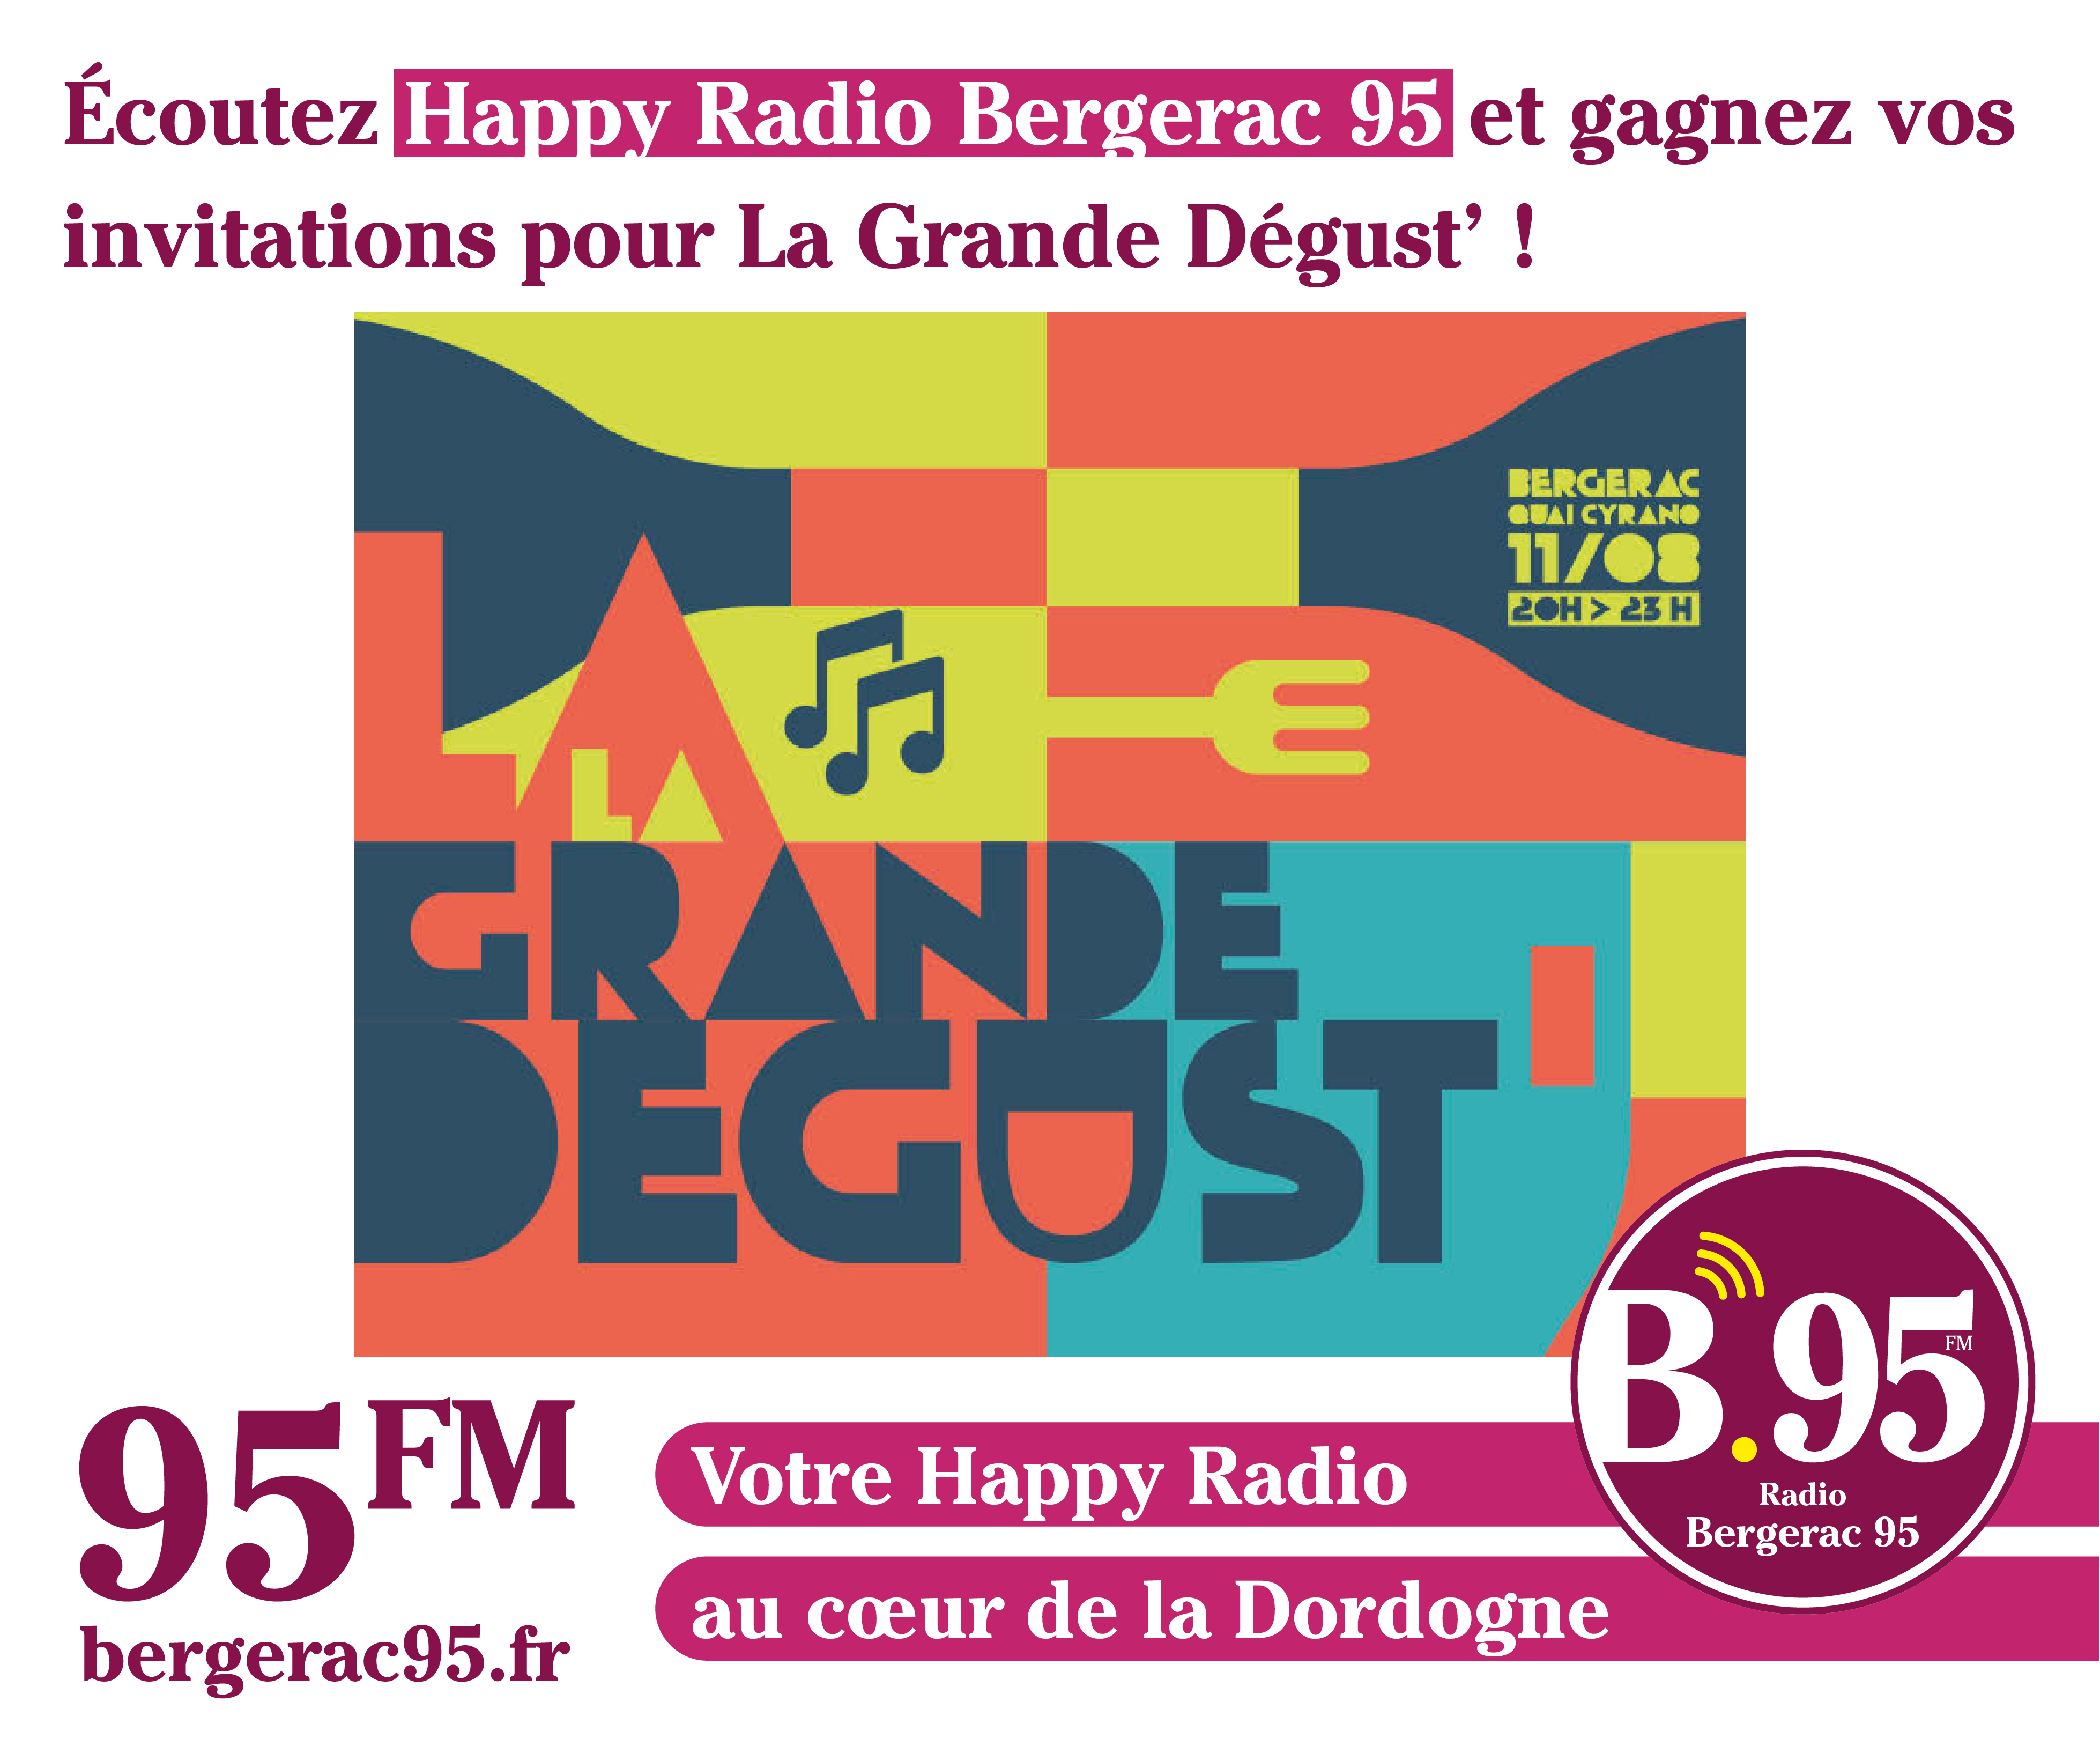 You are currently viewing Écoutez Happy Radio Bergerac 95 et gagnez vos invitations pour La Grande Dégust’ !